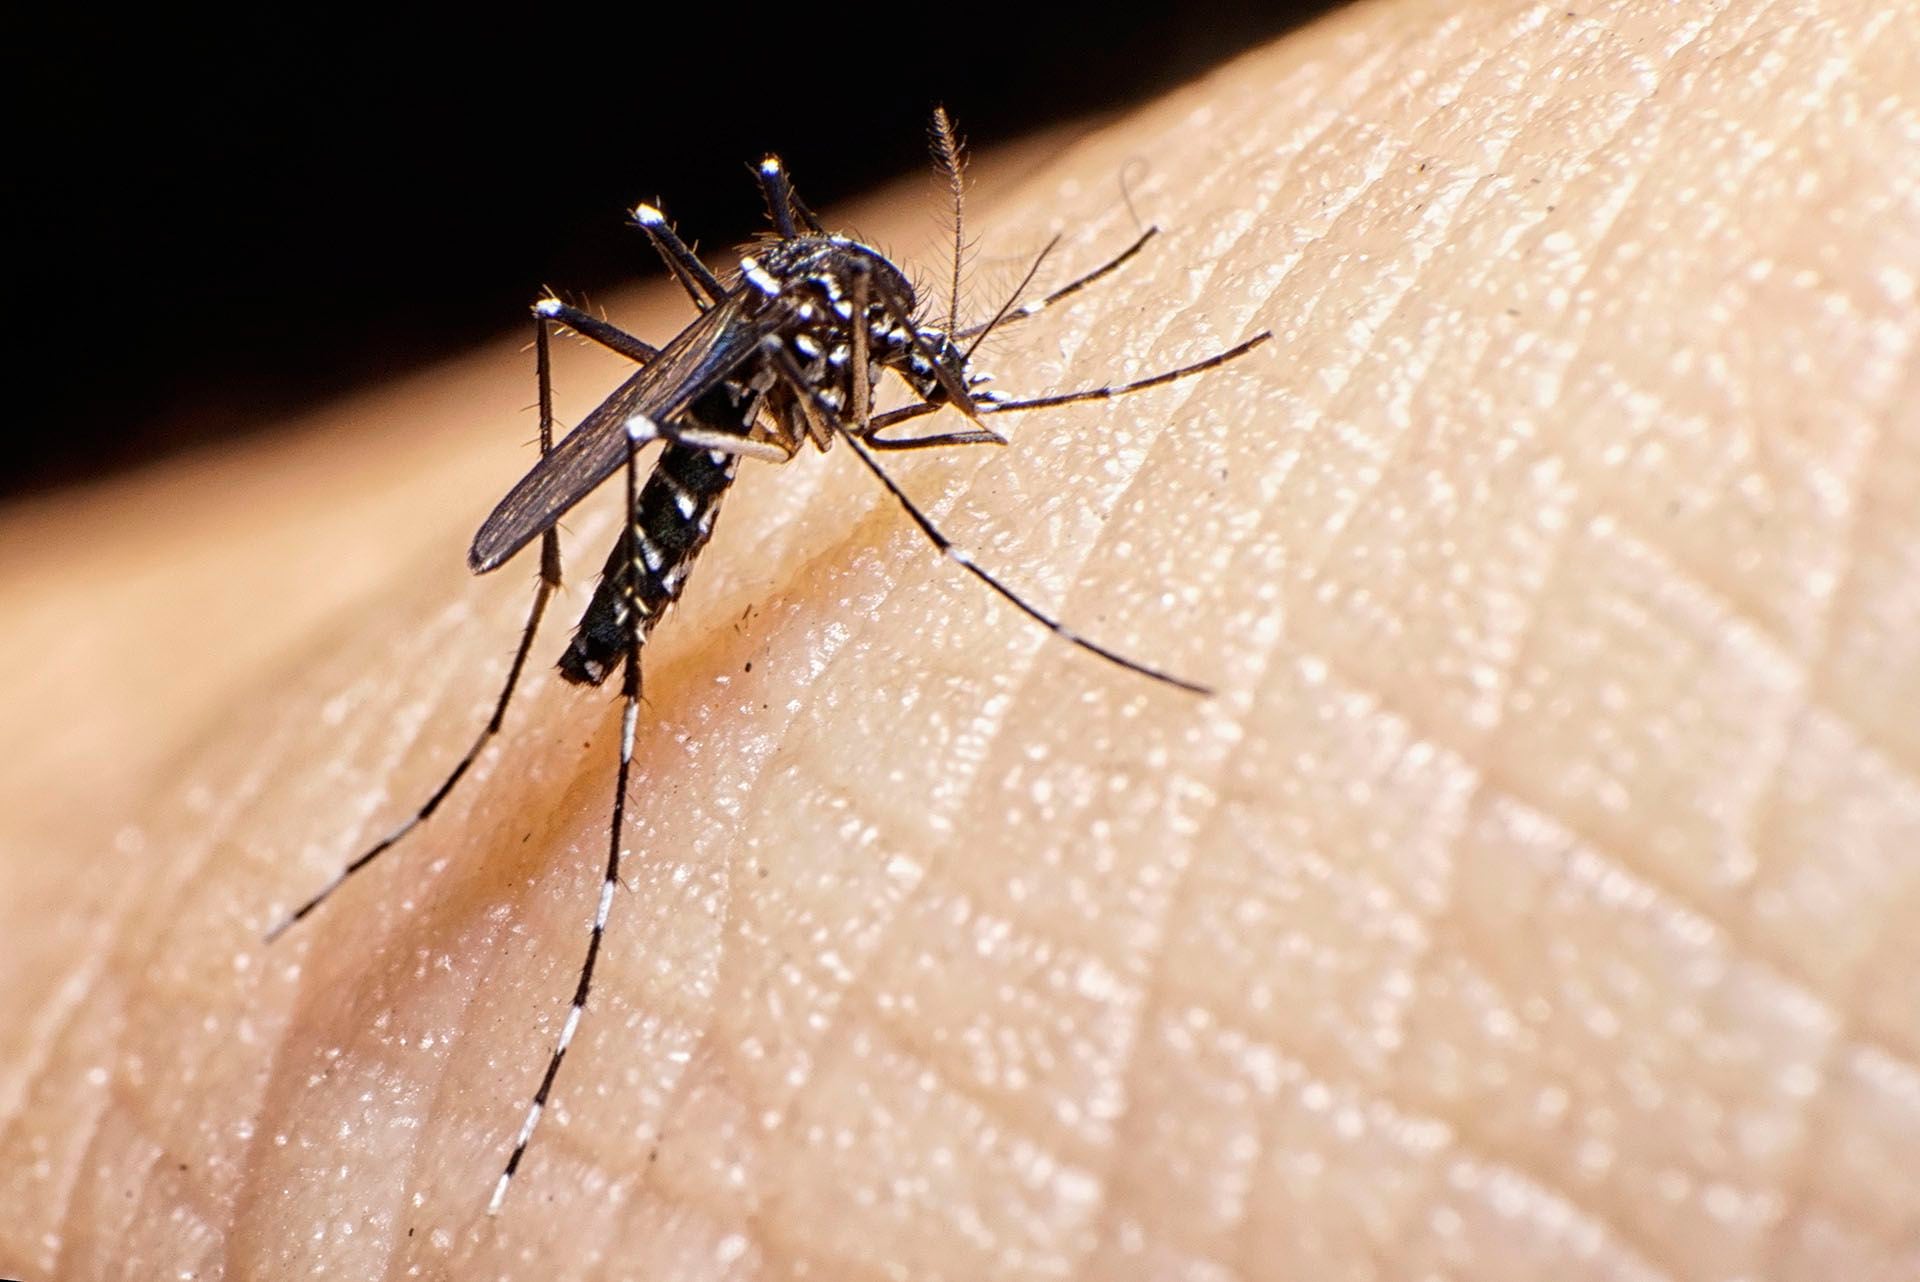 Tanto las personas que ya tuvieron dengue como la que no han adquirido la infección pueden desarrollar cuadros grave. Desde 2009 el "dengue hemorrágico" está incluido dentro de la definición de "dengue grave" (Getty) 